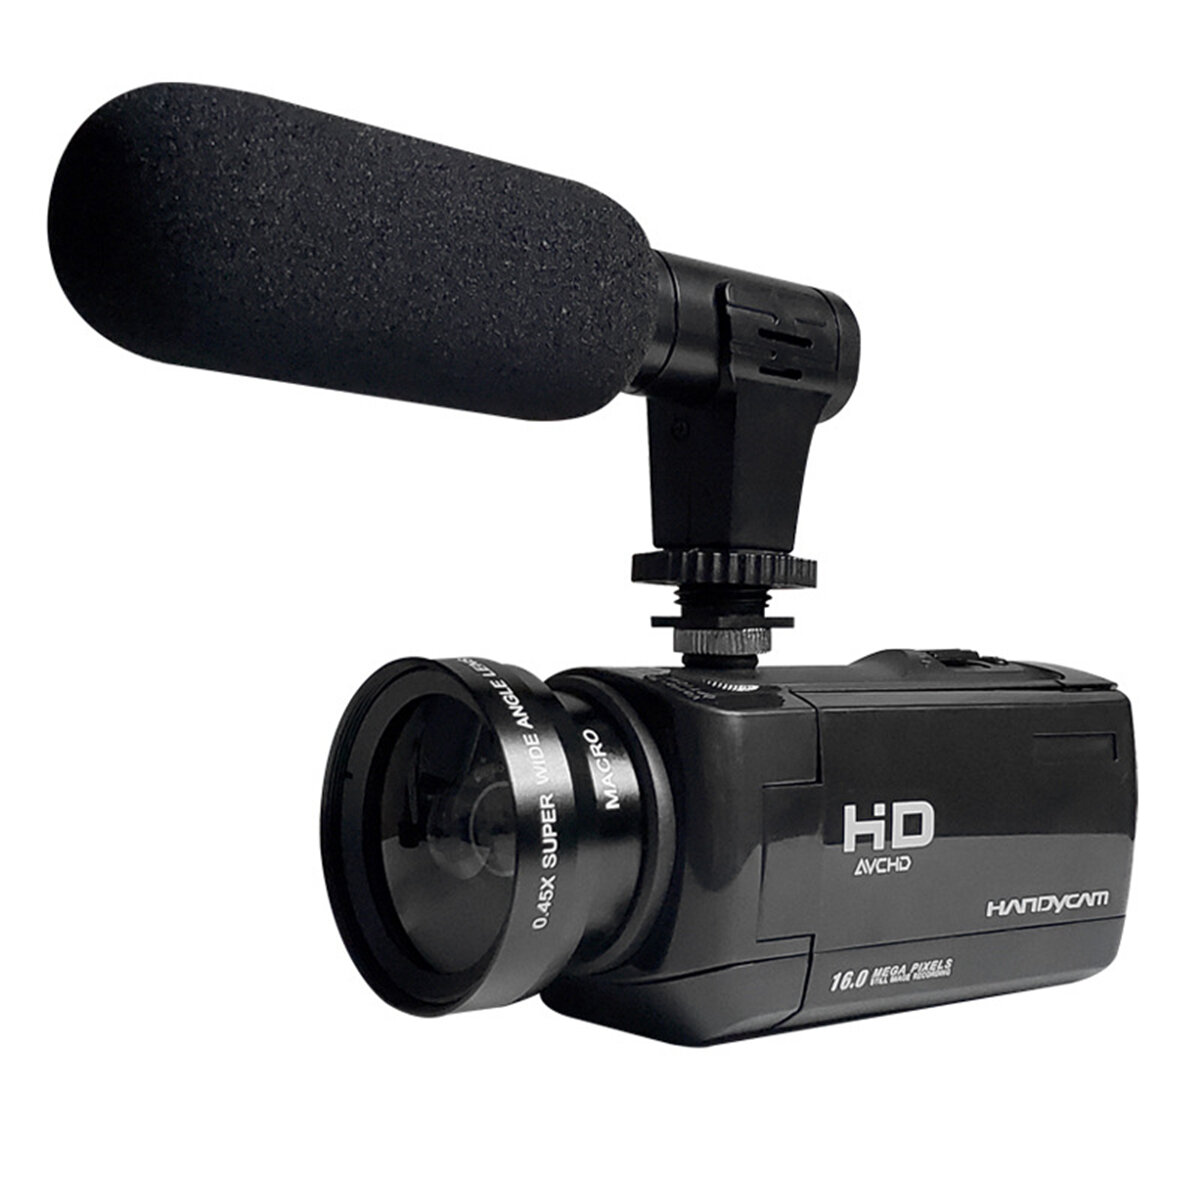 

18-кратный цифровой зум 1080P HD Цифровая видеокамера Видеоблог камера Внешний Микрофон DV